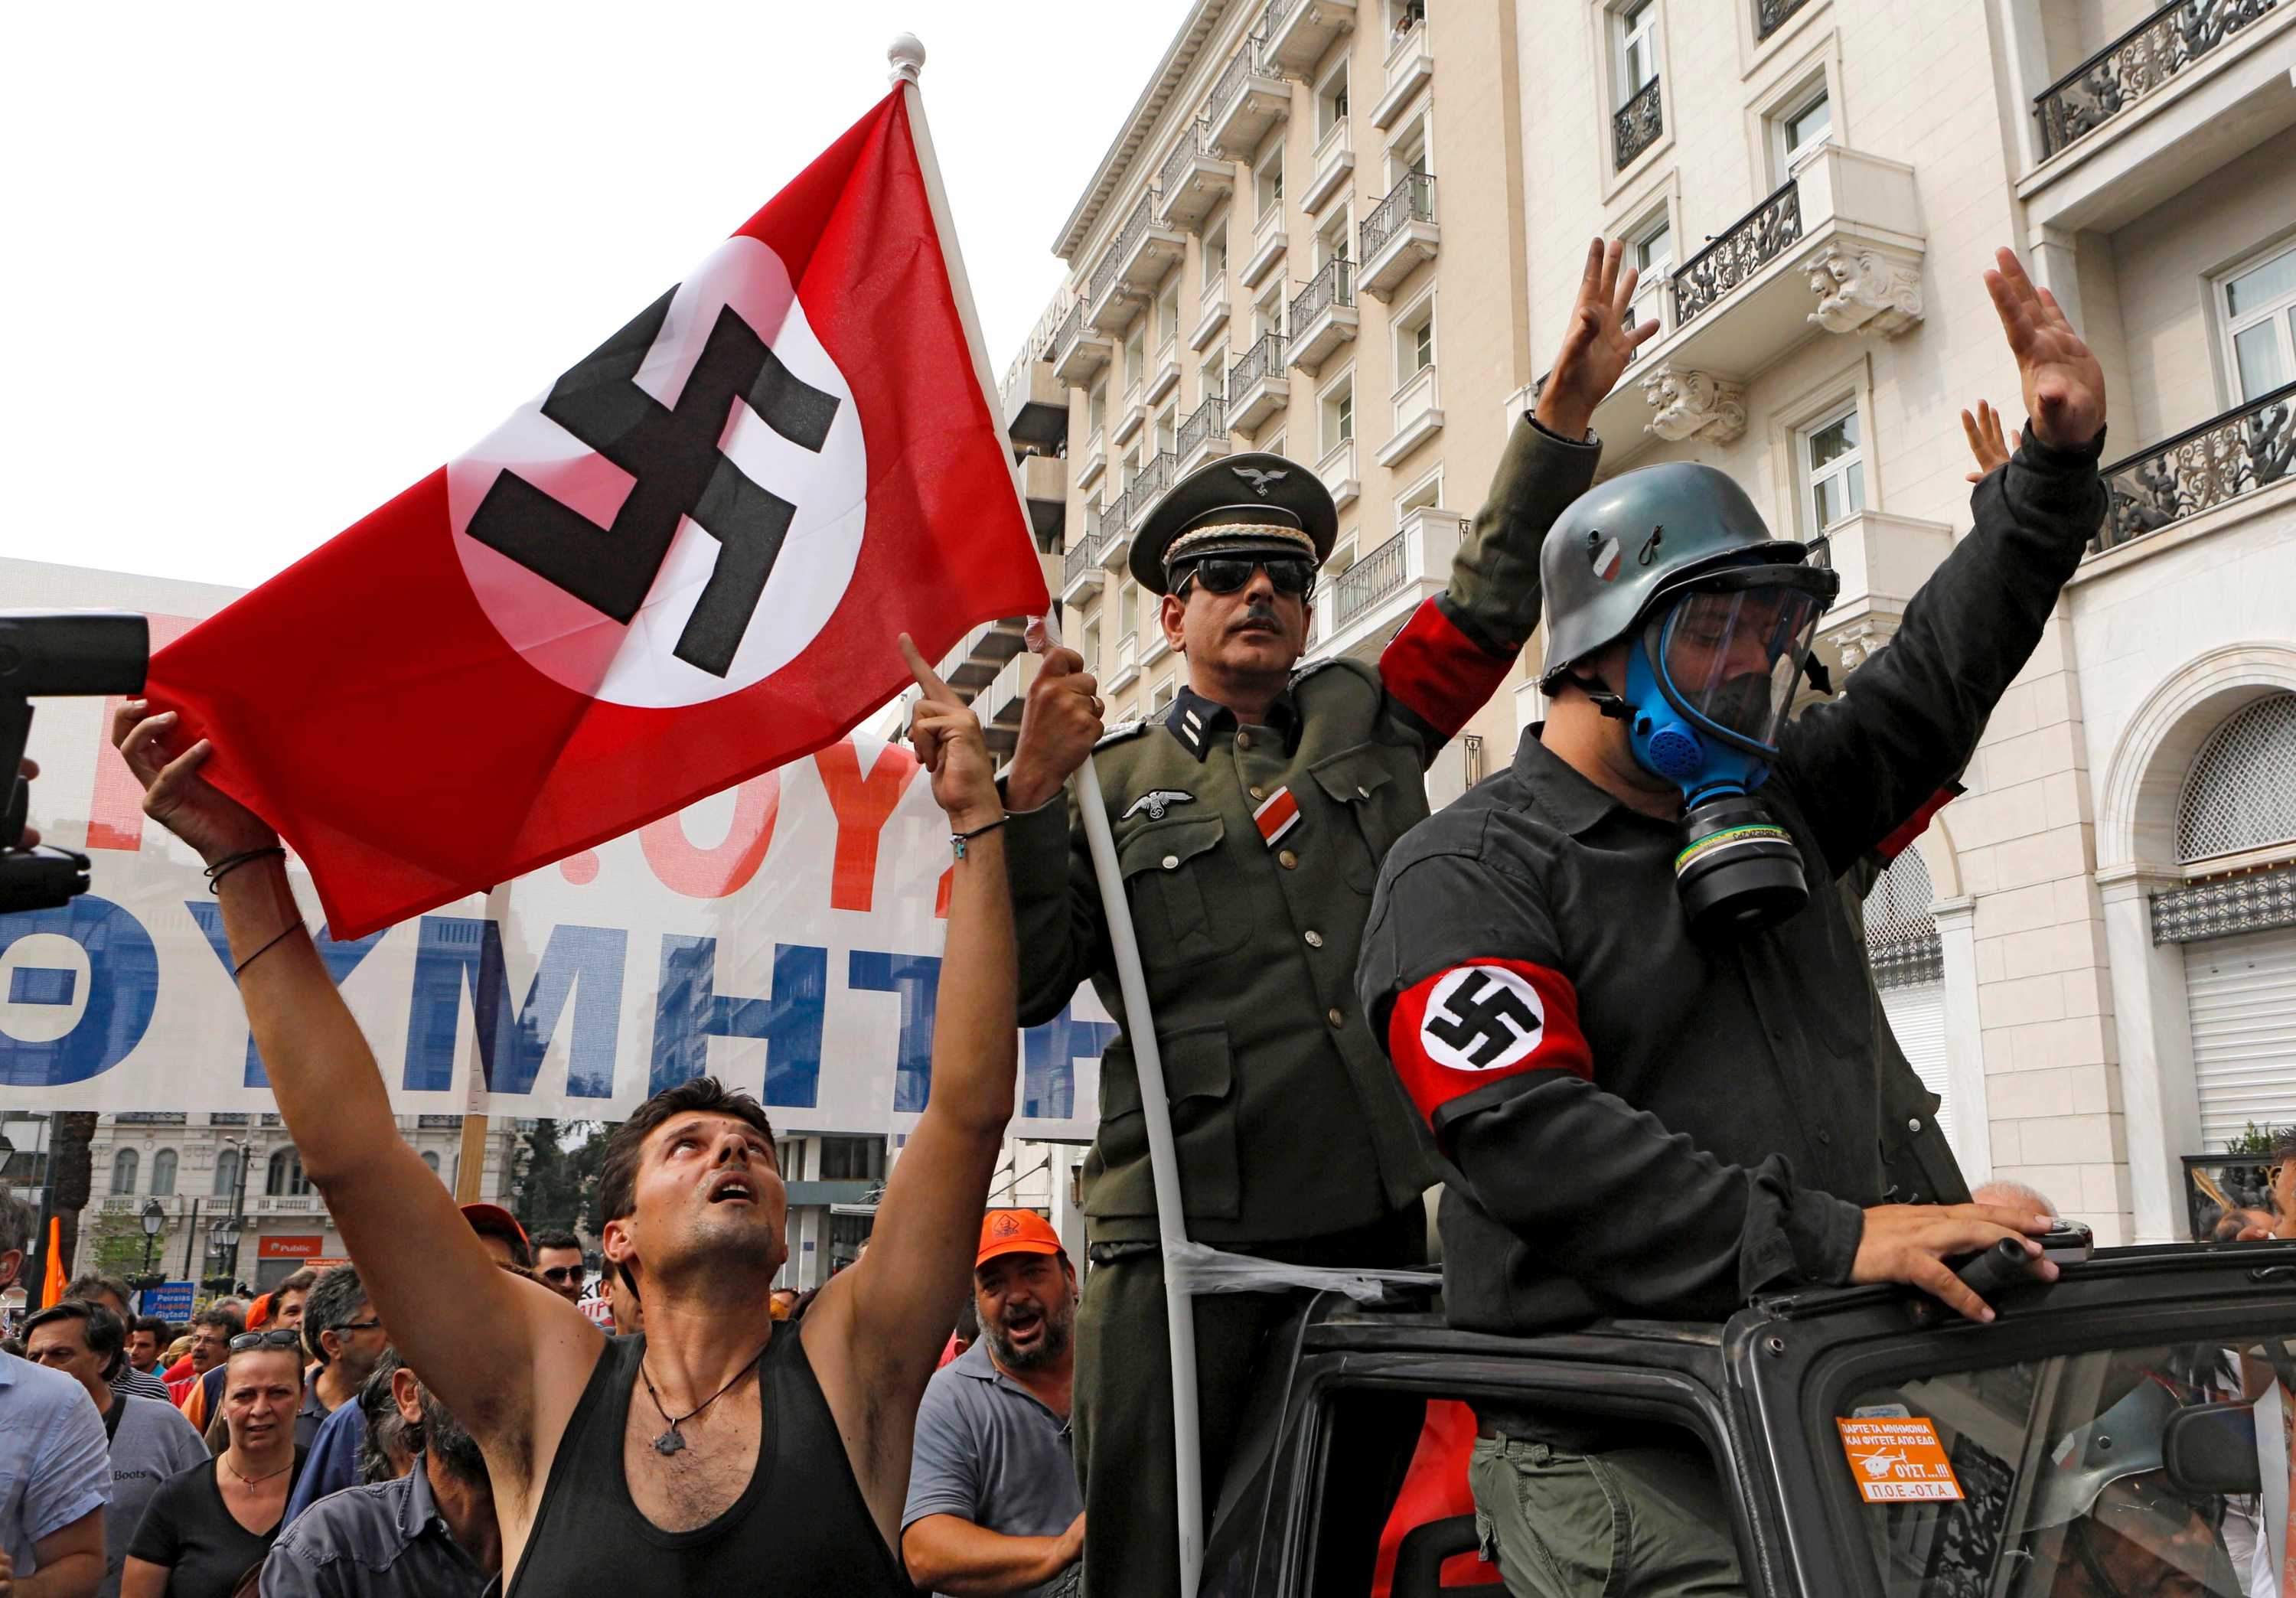 1 национал. Флаг неонацистов Германии. Неонацисты в Германии 2020. Неонацисты в Германии 2022. Современные нацисты.